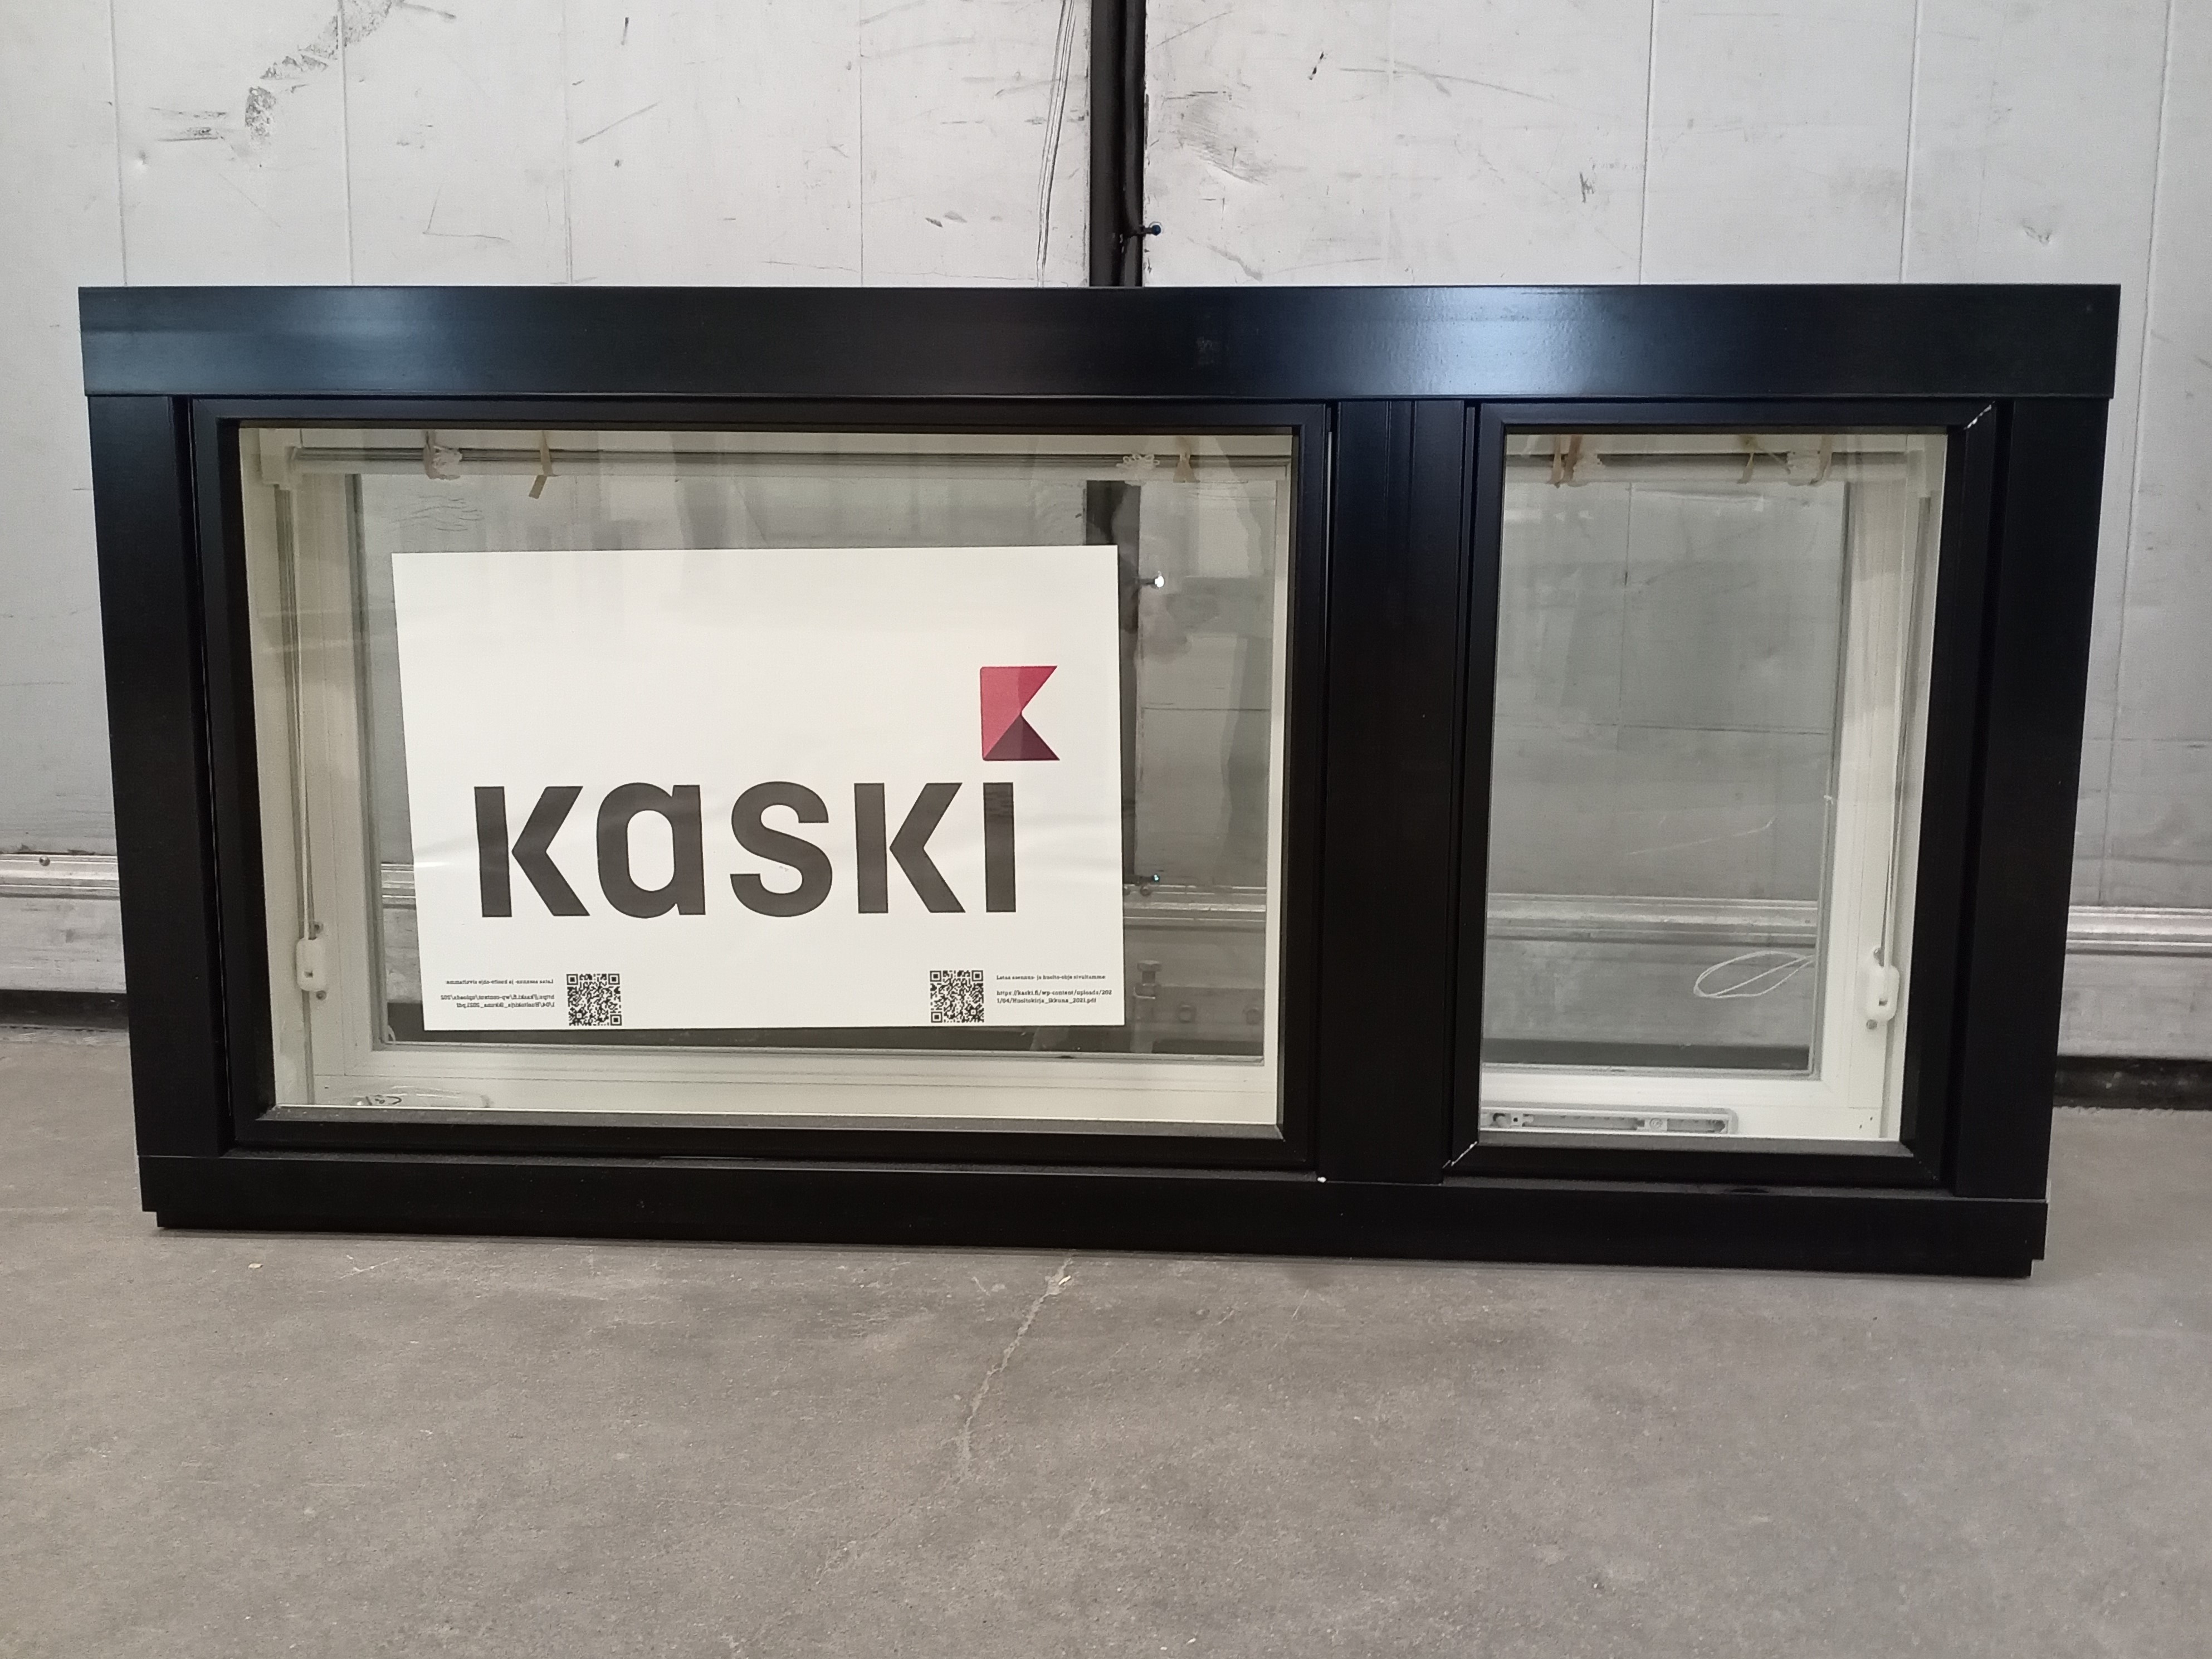 KP3895 Kaskipuu MSEA 170, 1190x590, Vit/svart, 12x6, VF